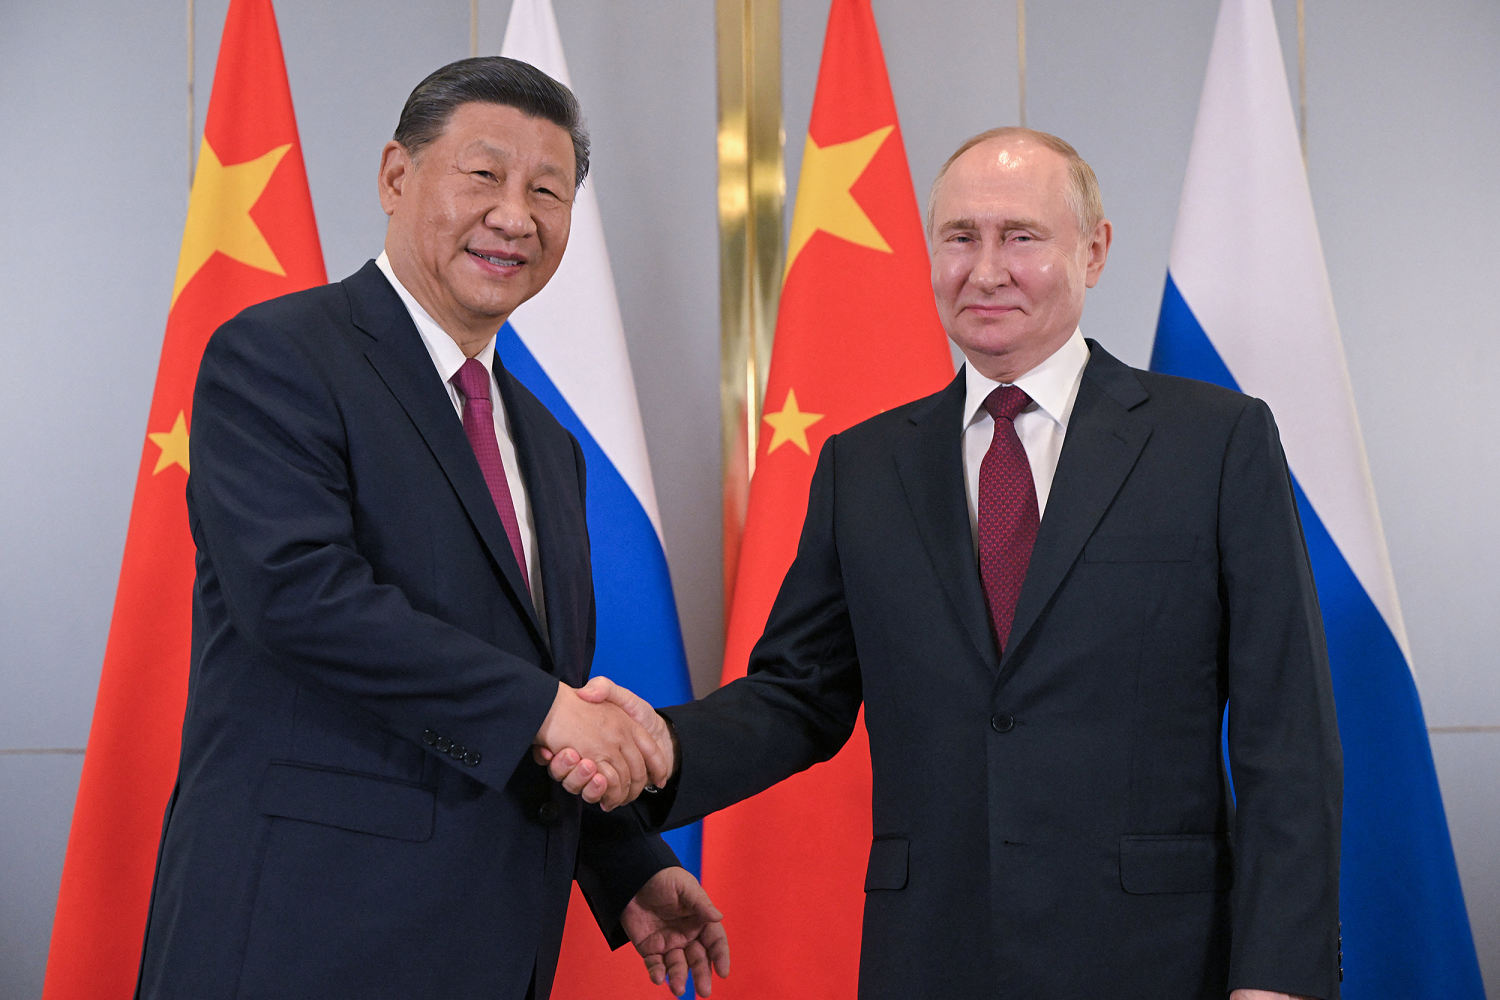 Putin and Xi meet at Central Asian summit aimed at countering U.S.